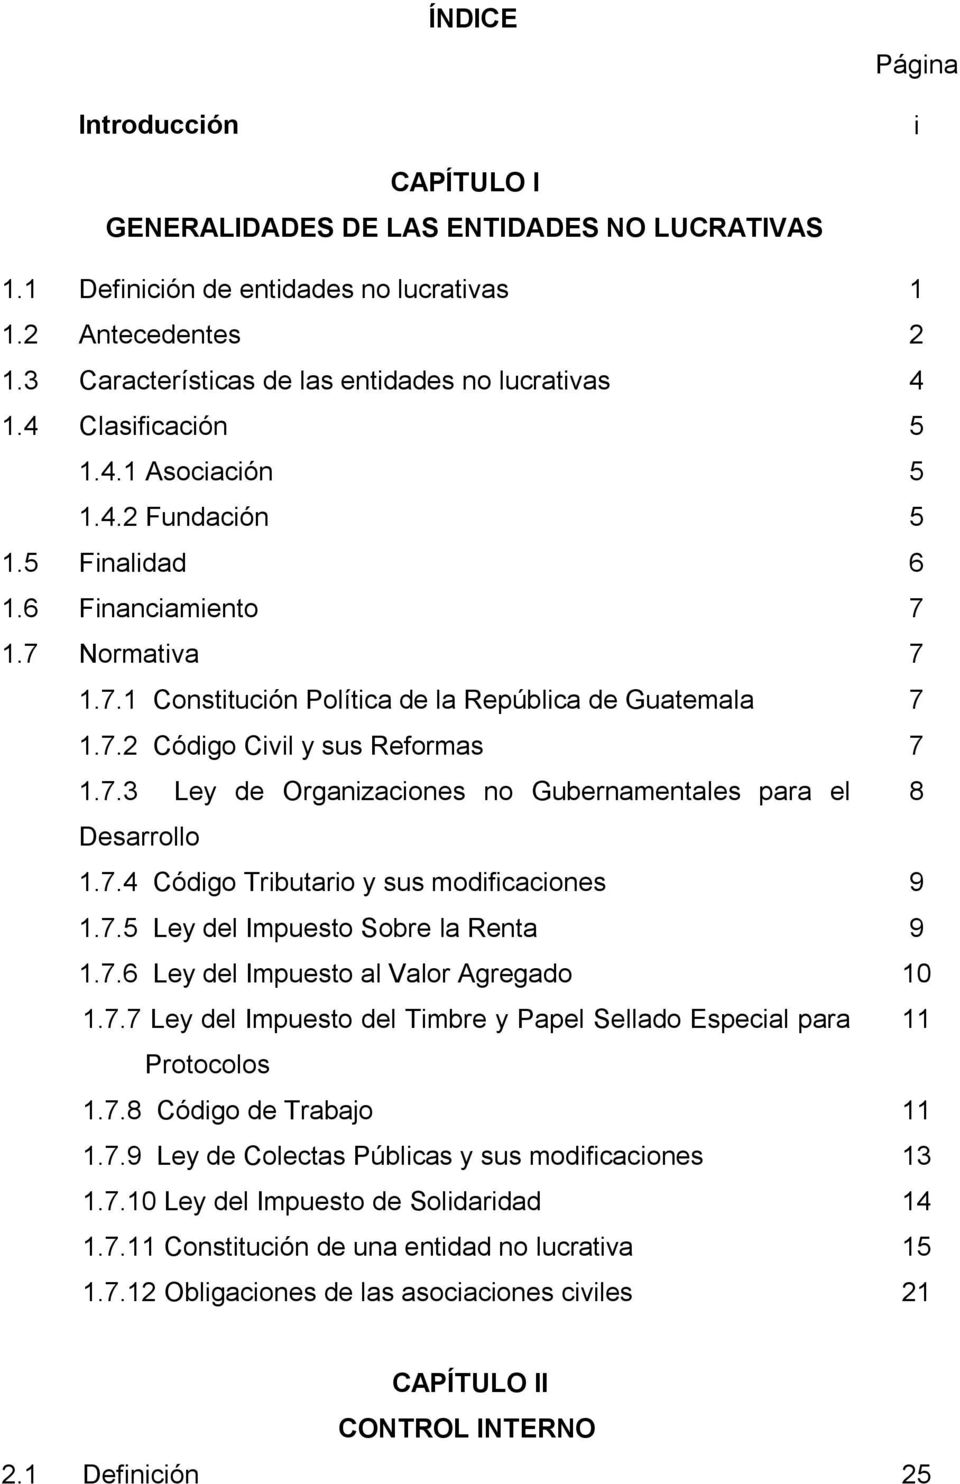 1.7 Normativa 7 1.7.1 Constitución Política de la República de Guatemala 7 1.7.2 Código Civil y sus Reformas 7 1.7.3 Ley de Organizaciones no Gubernamentales para el 8 Desarrollo 1.7.4 Código Tributario y sus modificaciones 9 1.